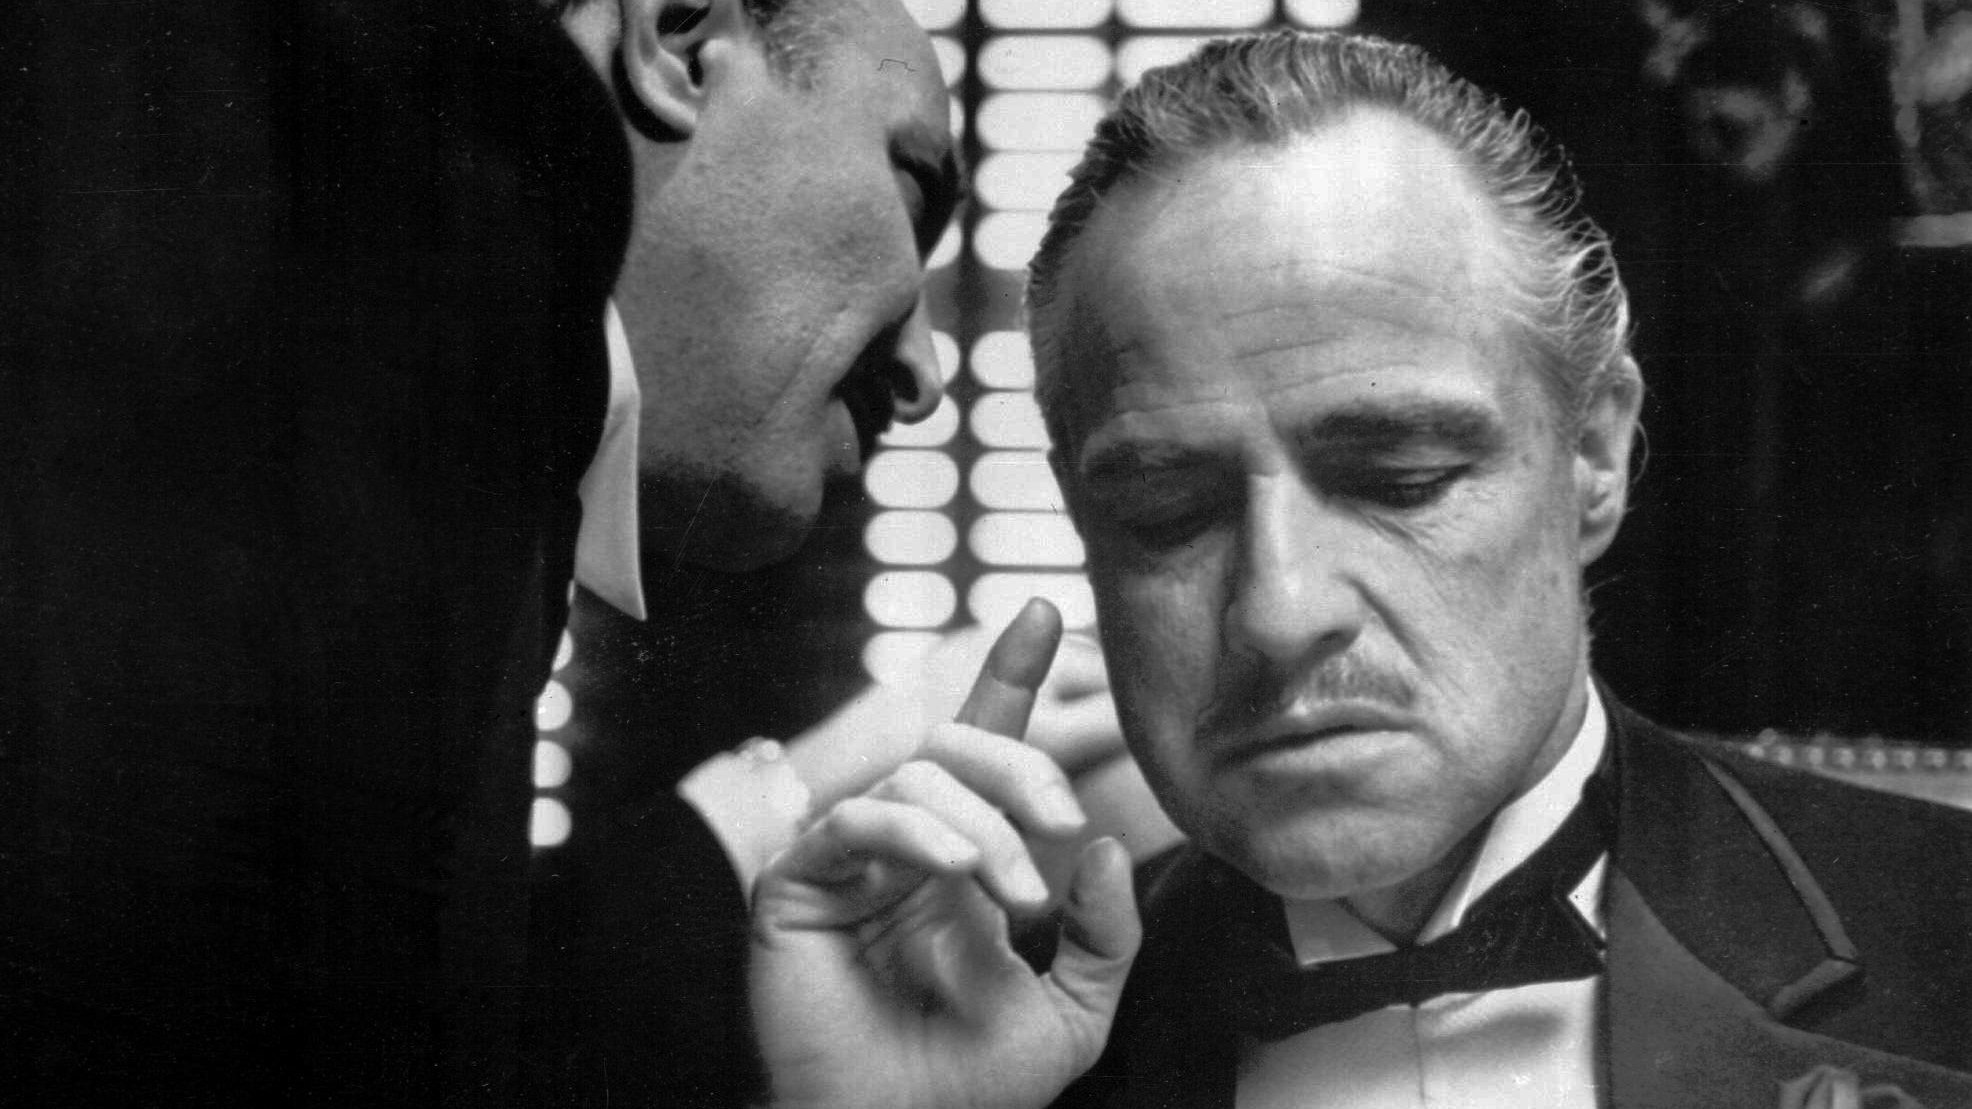 General 1972x1109 The Godfather movies monochrome advice Marlon Brando film stills Vito Corleone men